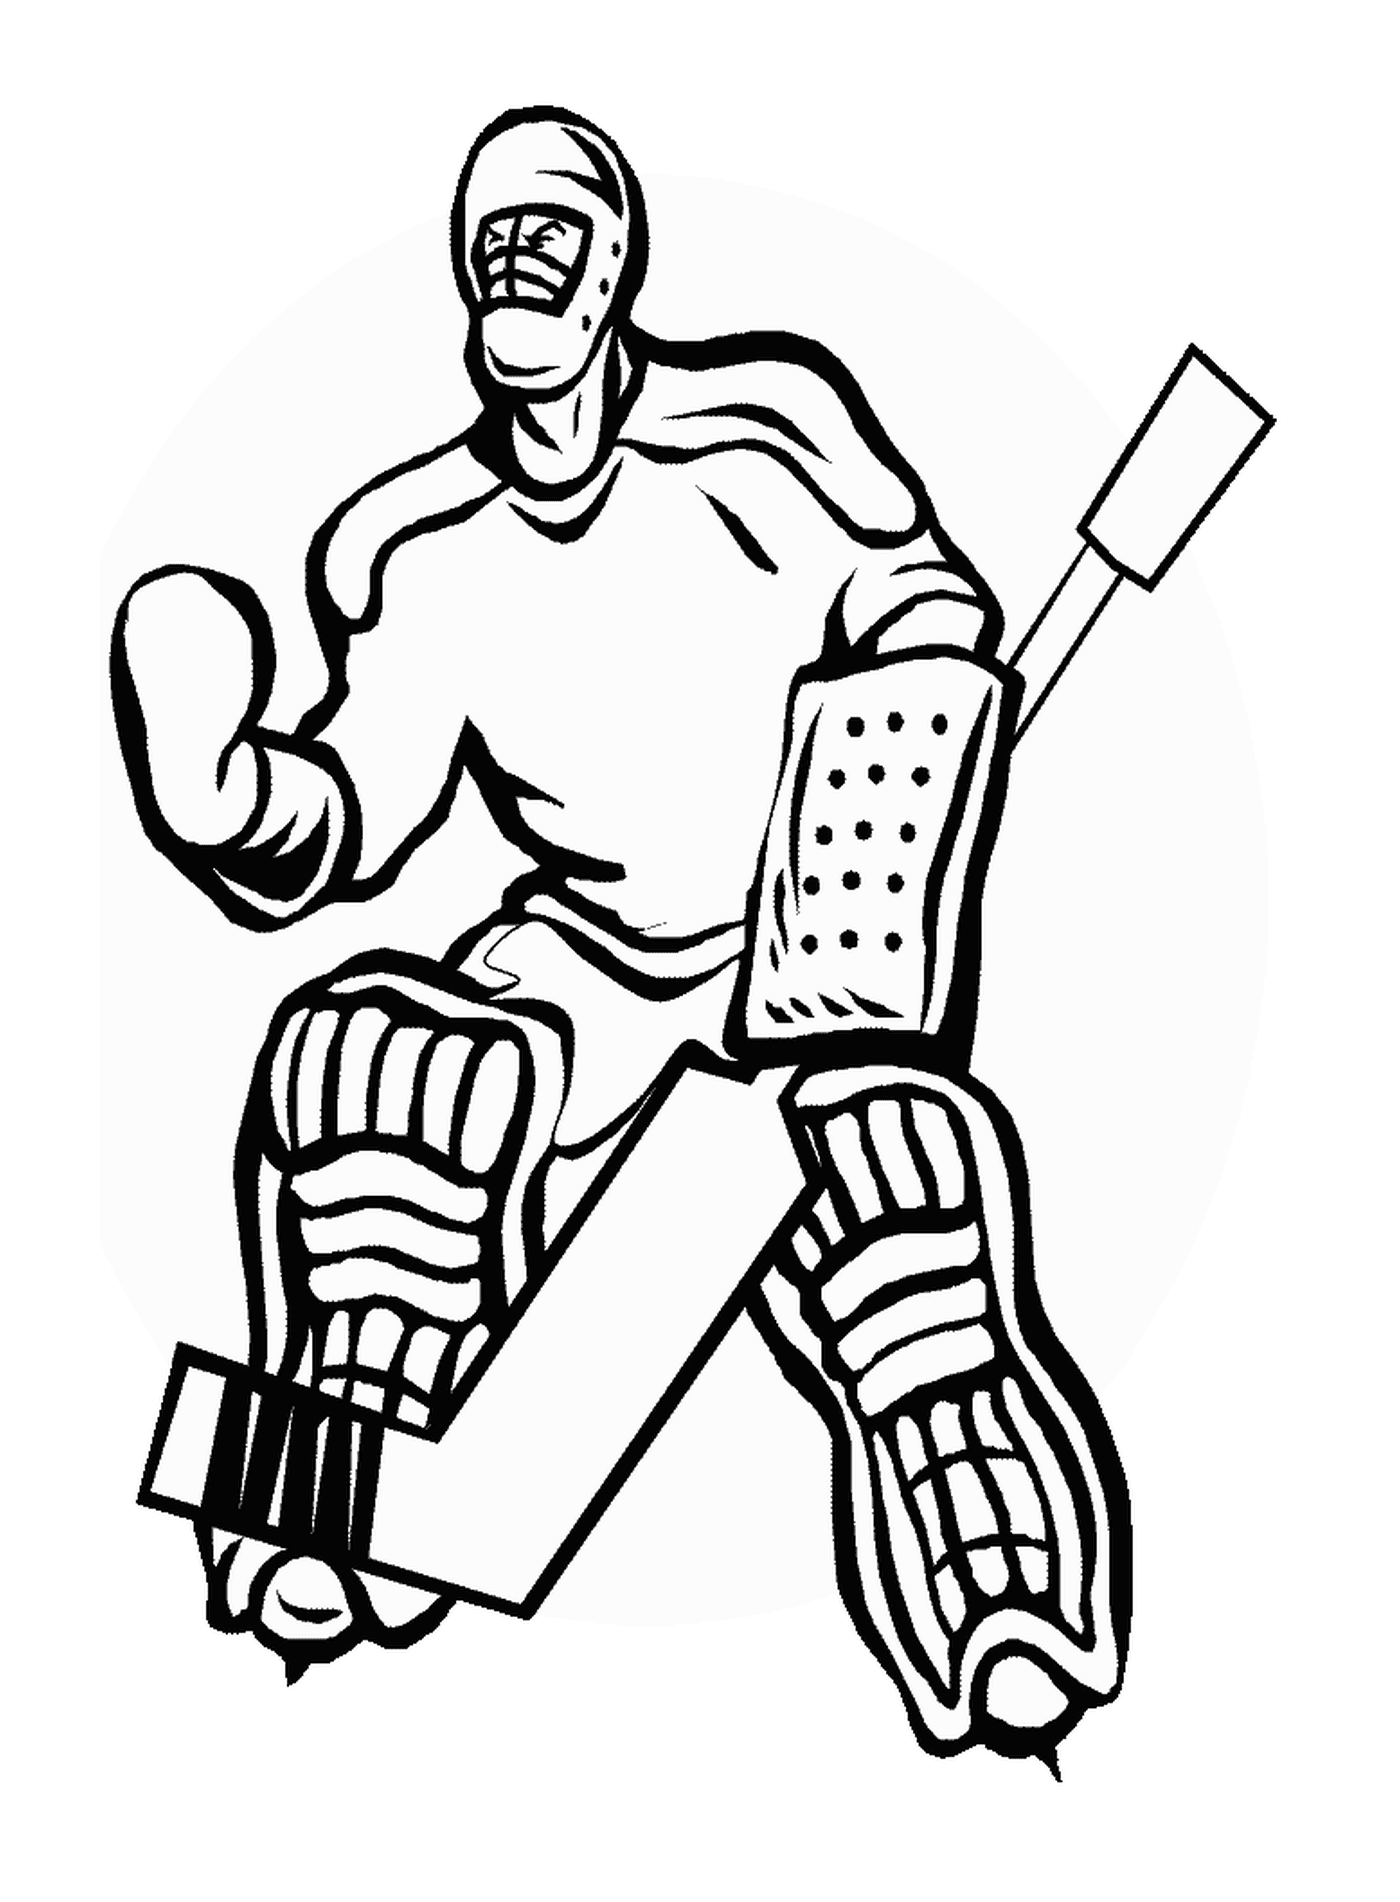  Guardia appassionata di hockey 